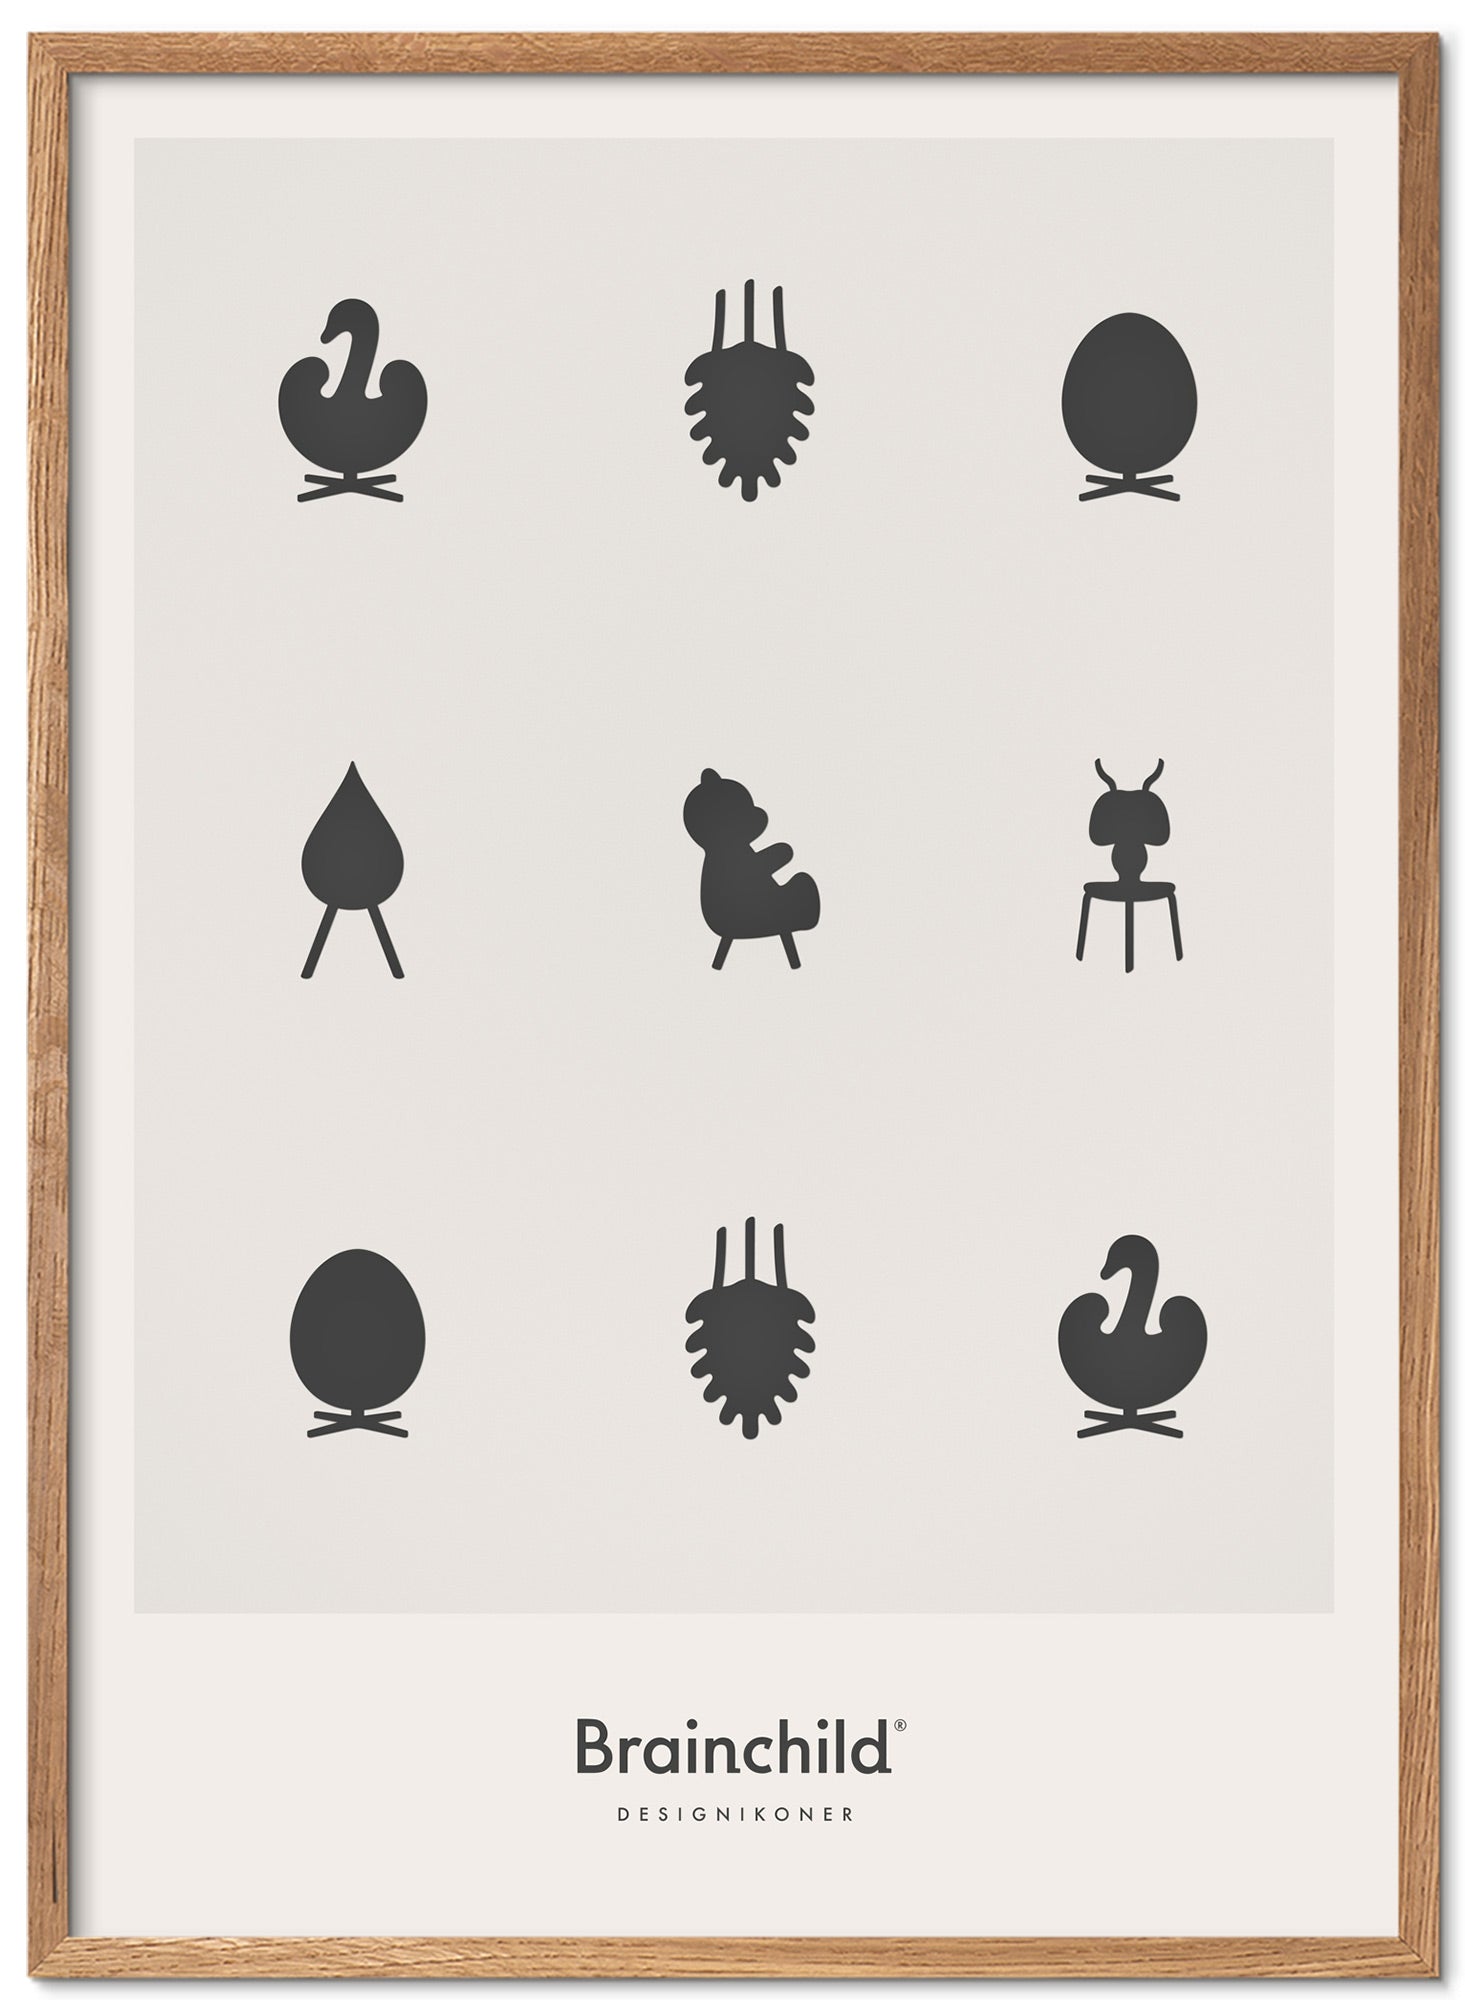 Marco de póster de iconos de diseño de creación de madera clara 70x100 cm, gris claro